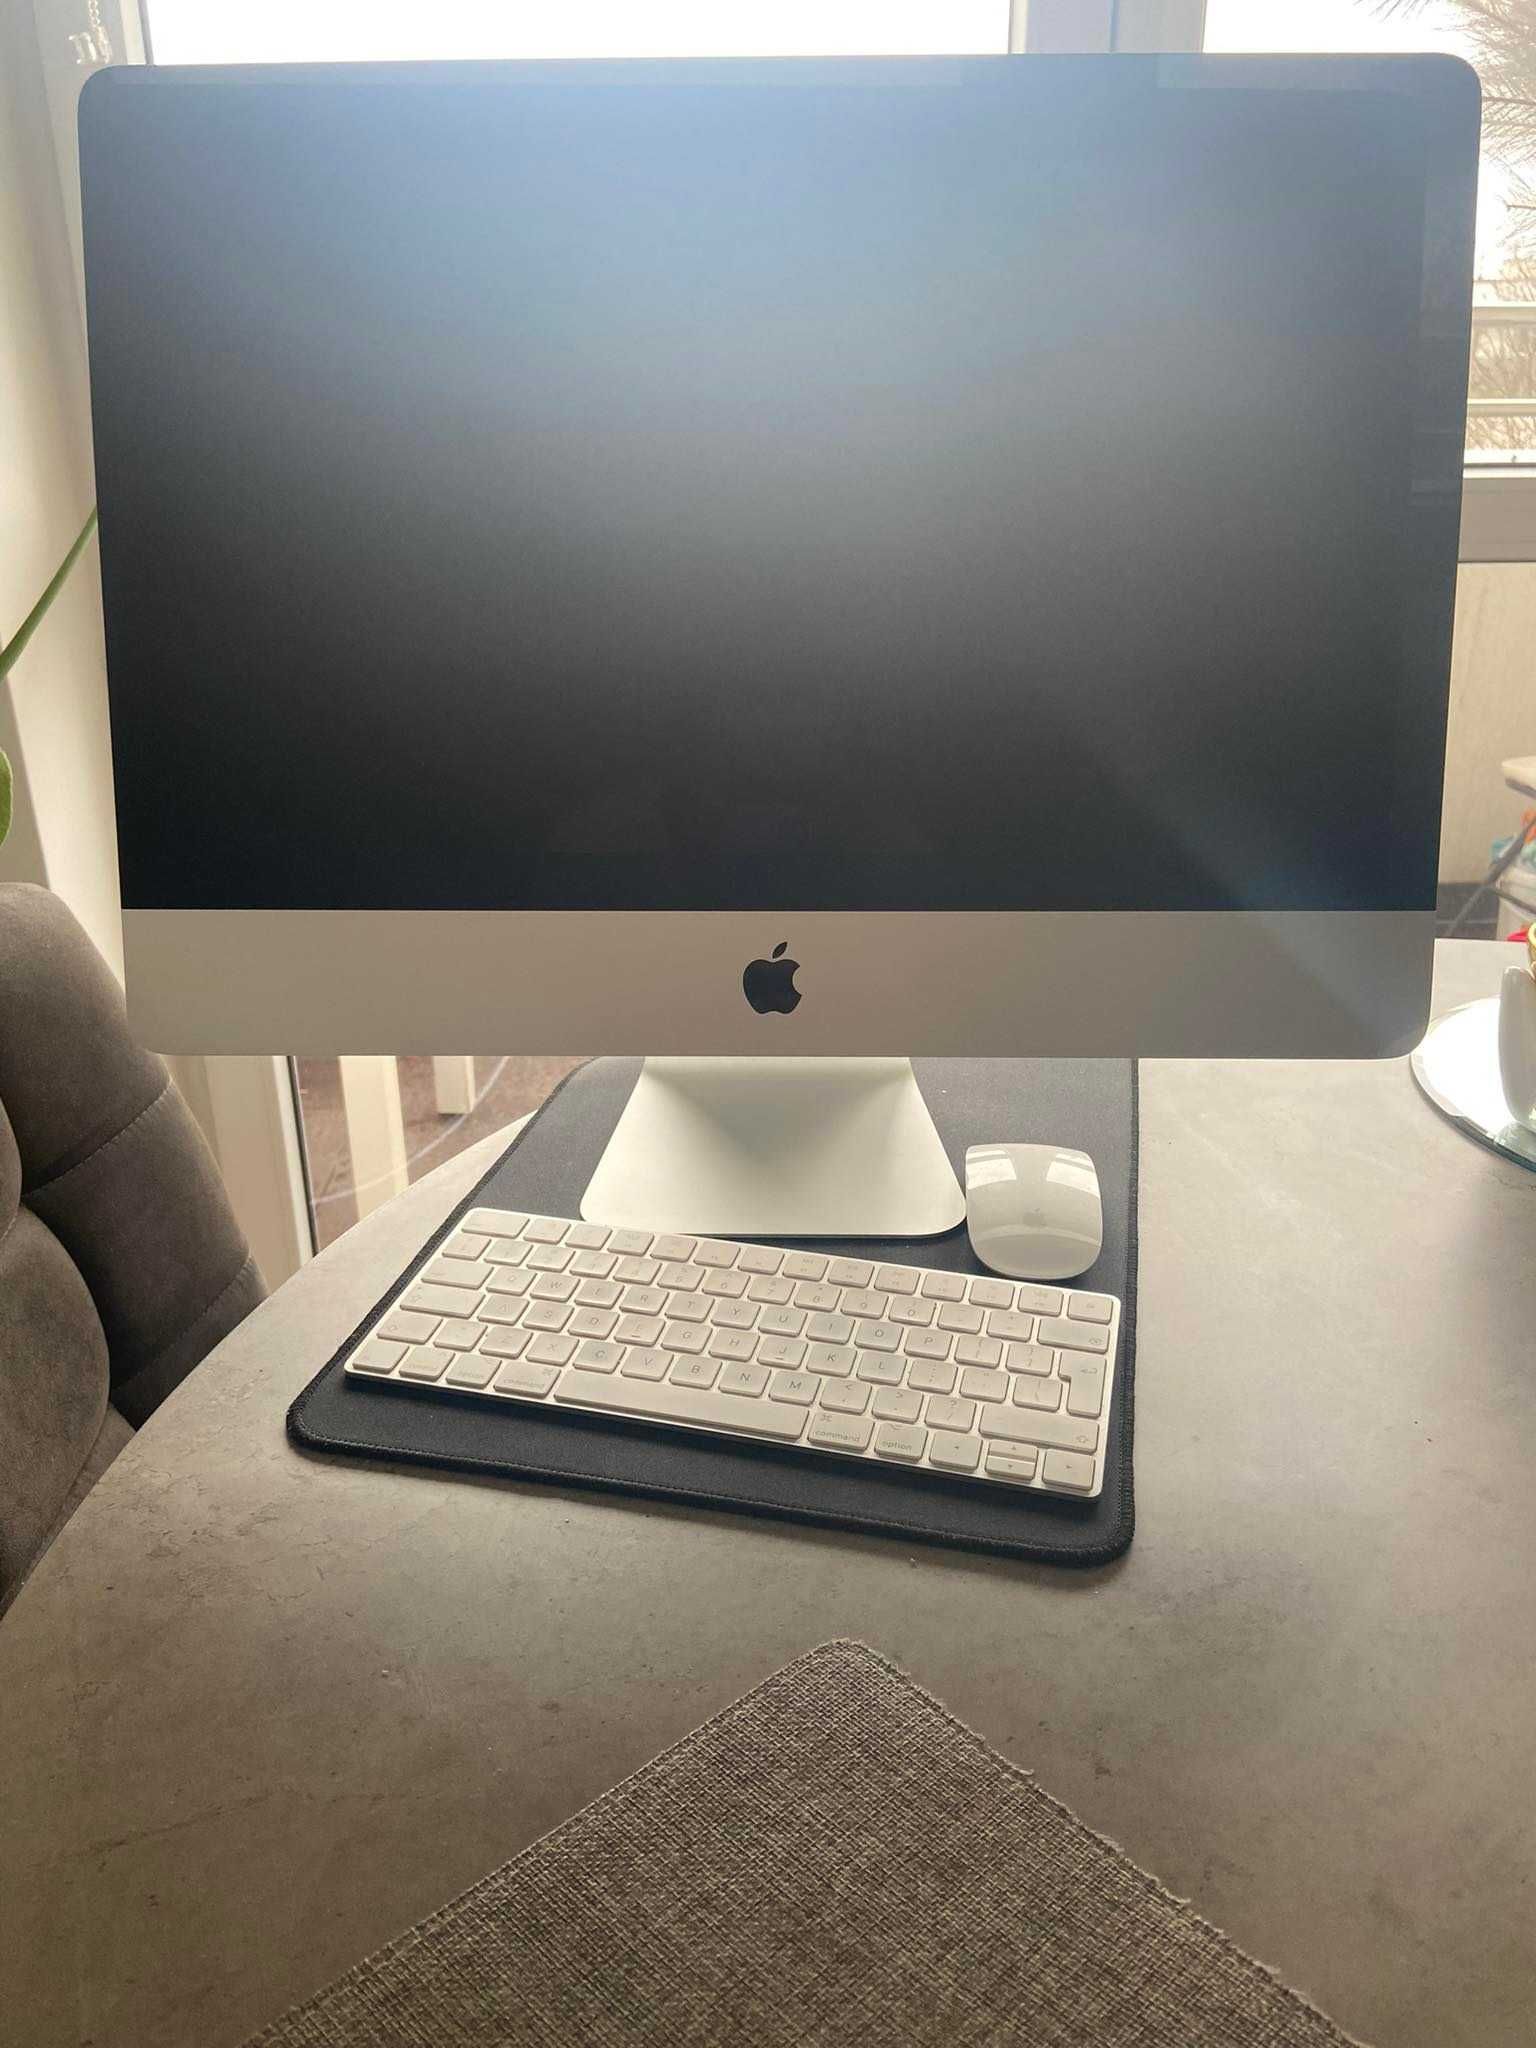 Komputer stacjonarny iMac Apple 18,2 -stan idealny +papiery+pudełko.